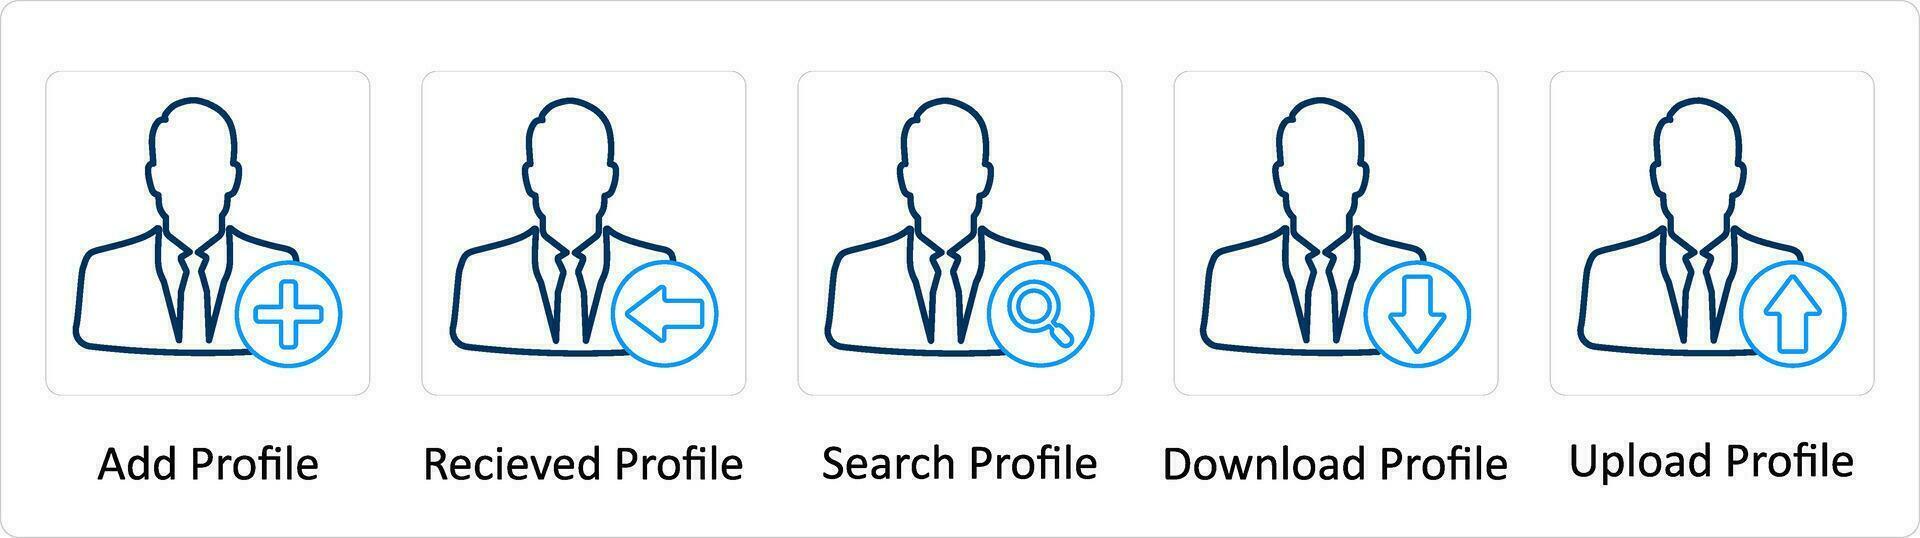 une ensemble de 5 supplémentaire Icônes comme ajouter profil, reçu profil, chercher profil vecteur